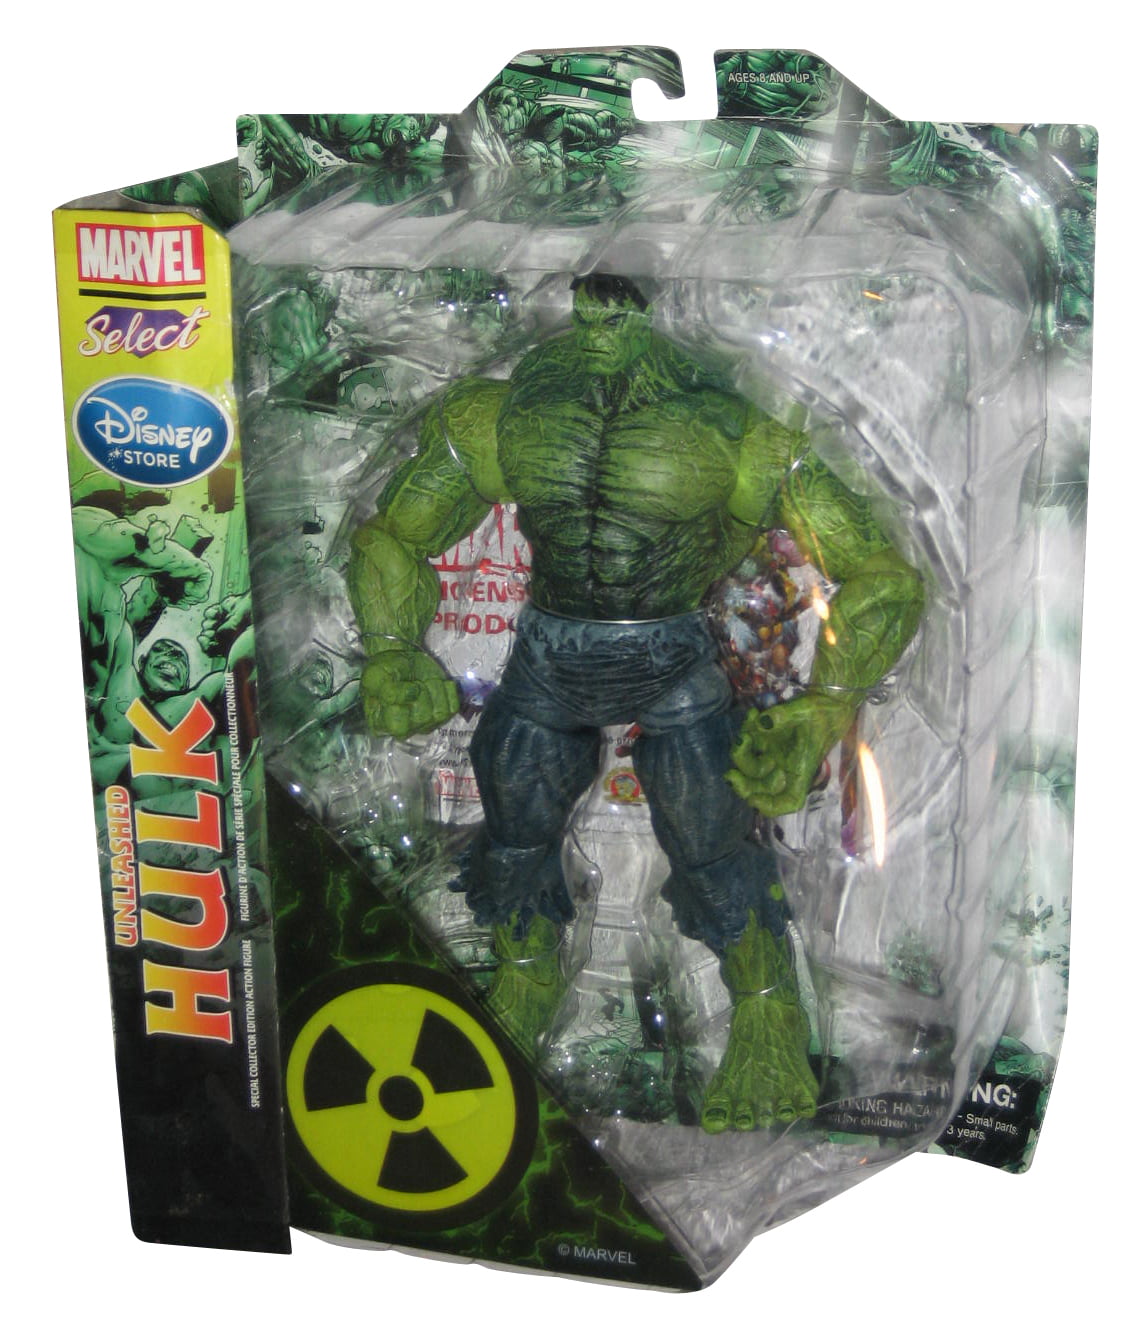 Unleashed Hulk Marvel Select Figurine Diamond Hulk 